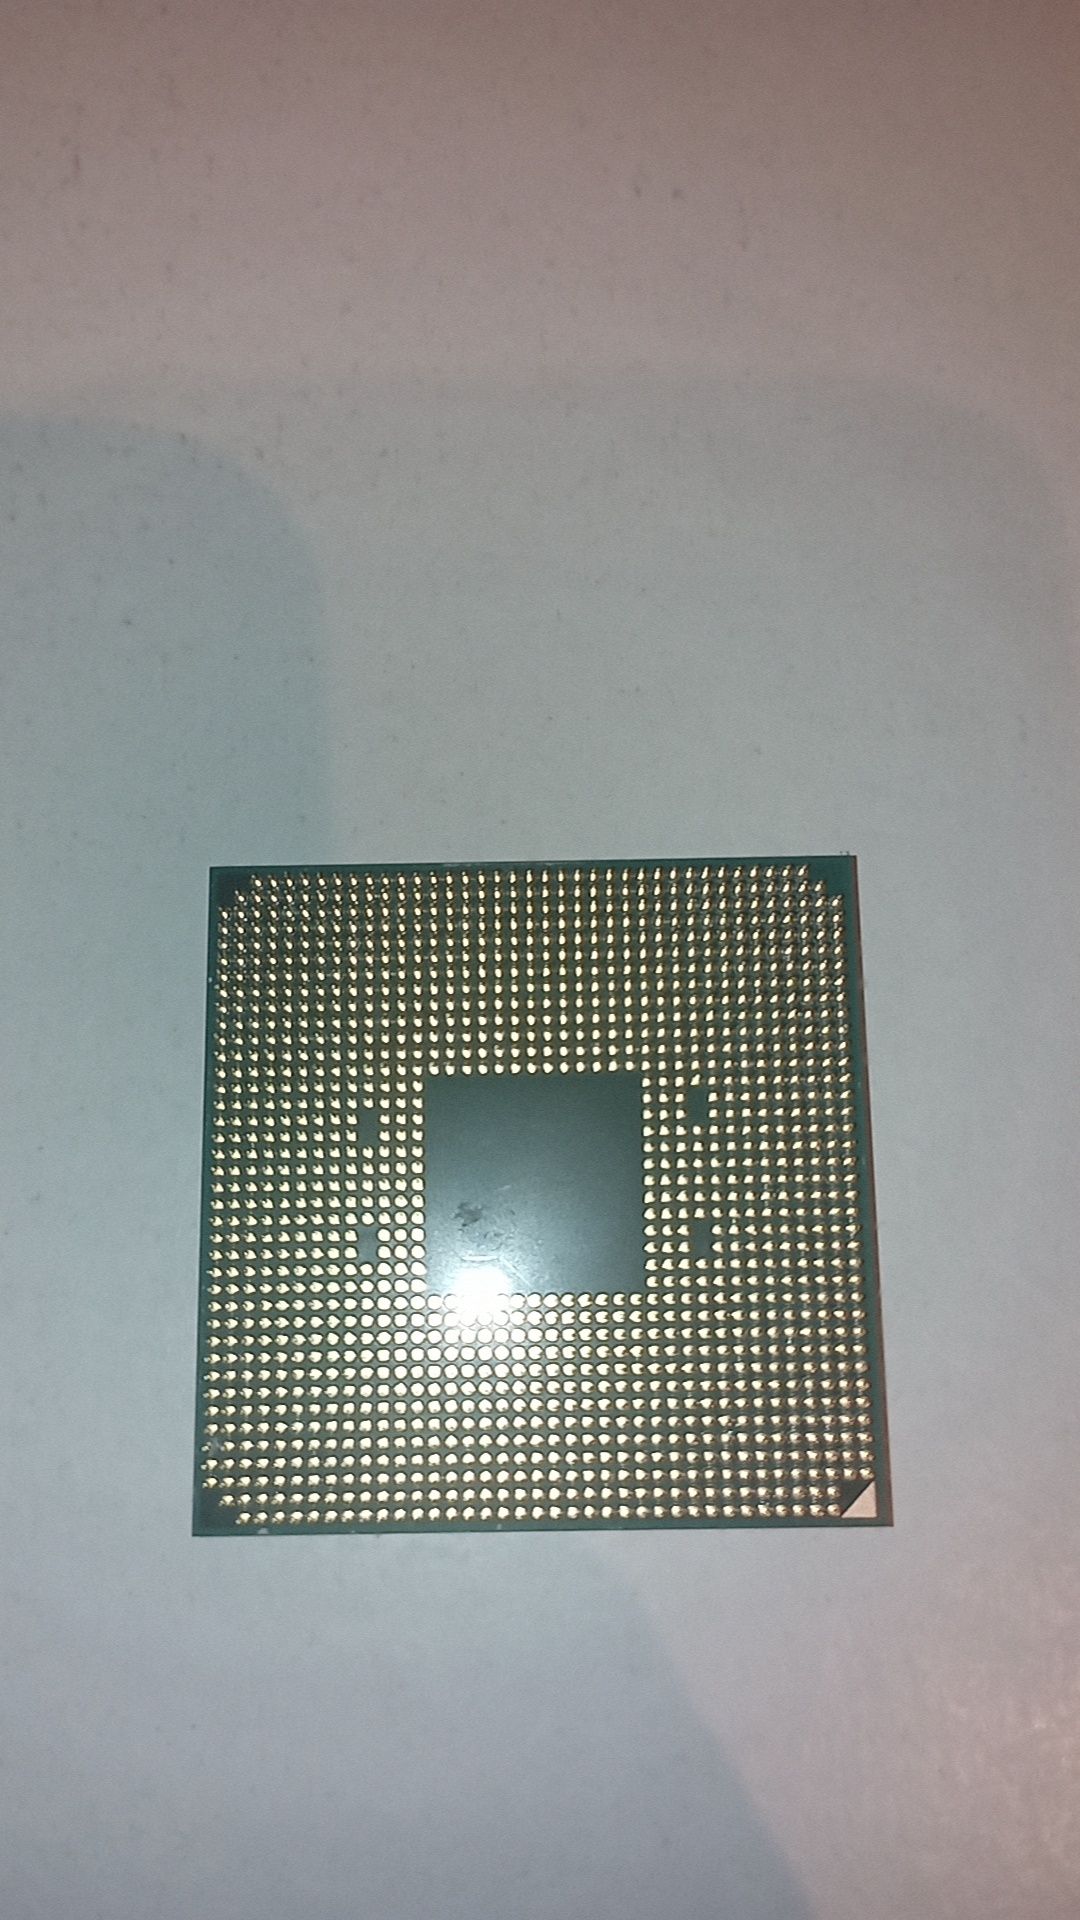 Vand procesor/CPU ryzen 5 1600